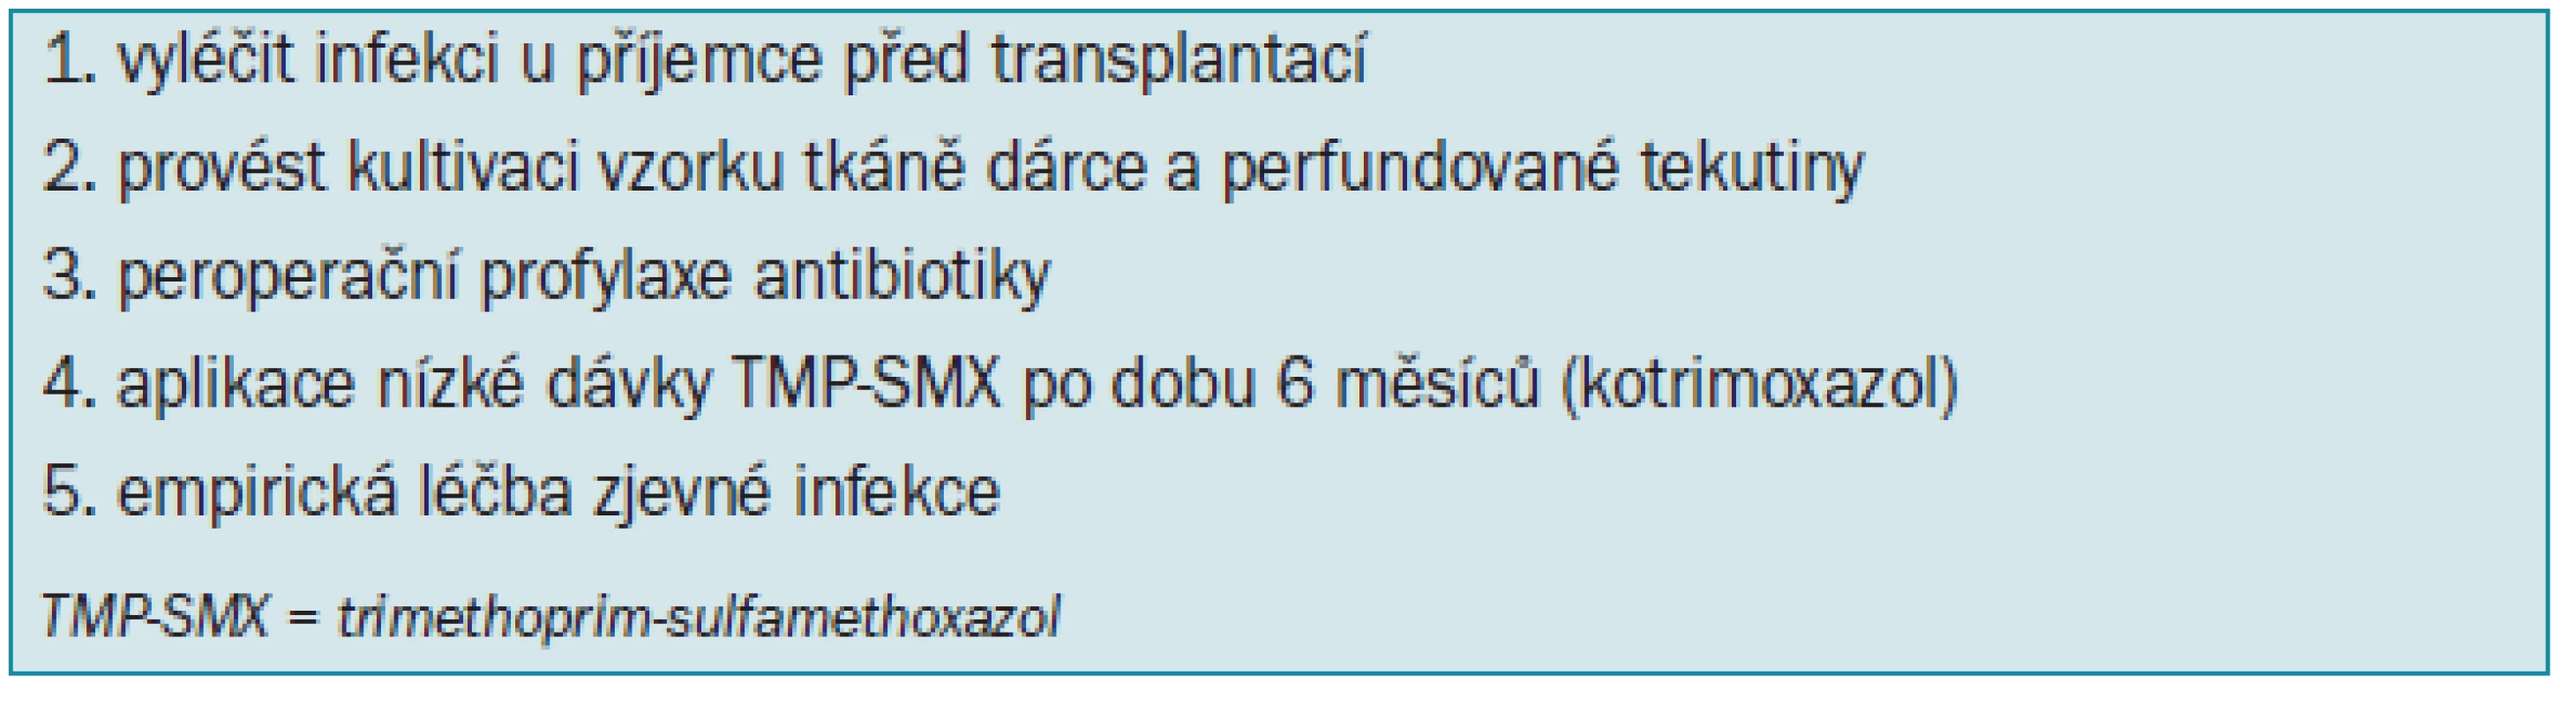 Doporučení pro prevenci a léčbu infekce močových cest při transplantaci ledviny.